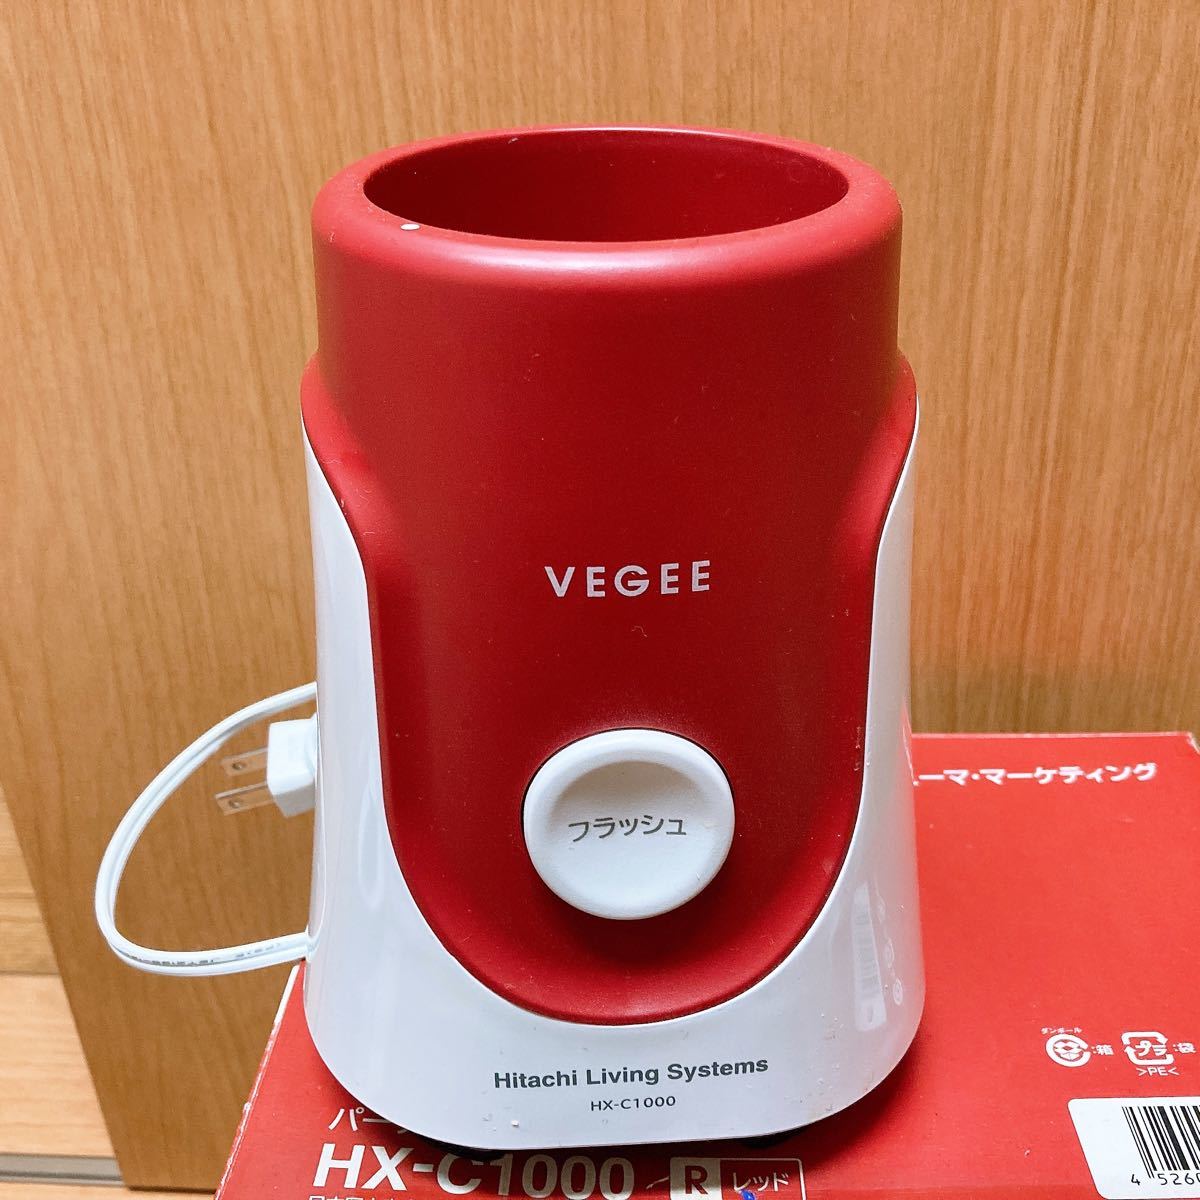 【動作確認済み】【送料出品者負担】VEGEE HX-C1000 RED パーソナルブレンダー HITACHI 